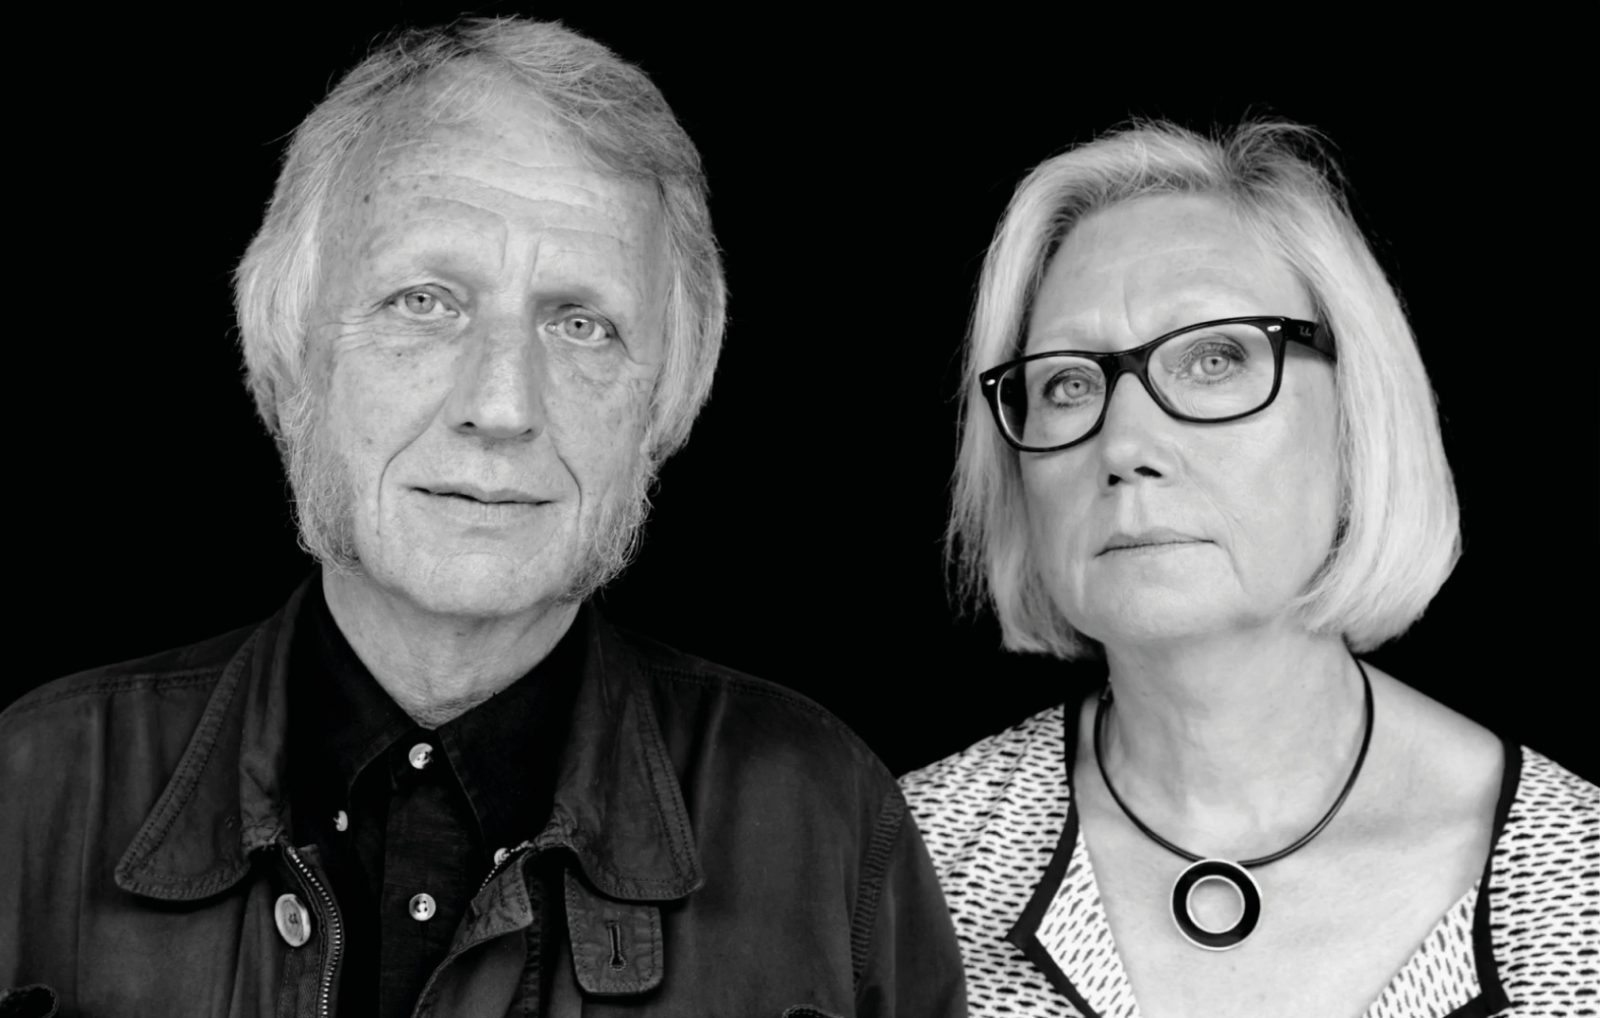 Porträtt av gråblond man och kvinna, Knut Hagberg och Marianne Hagberg, fotograferade mot svart vägg.